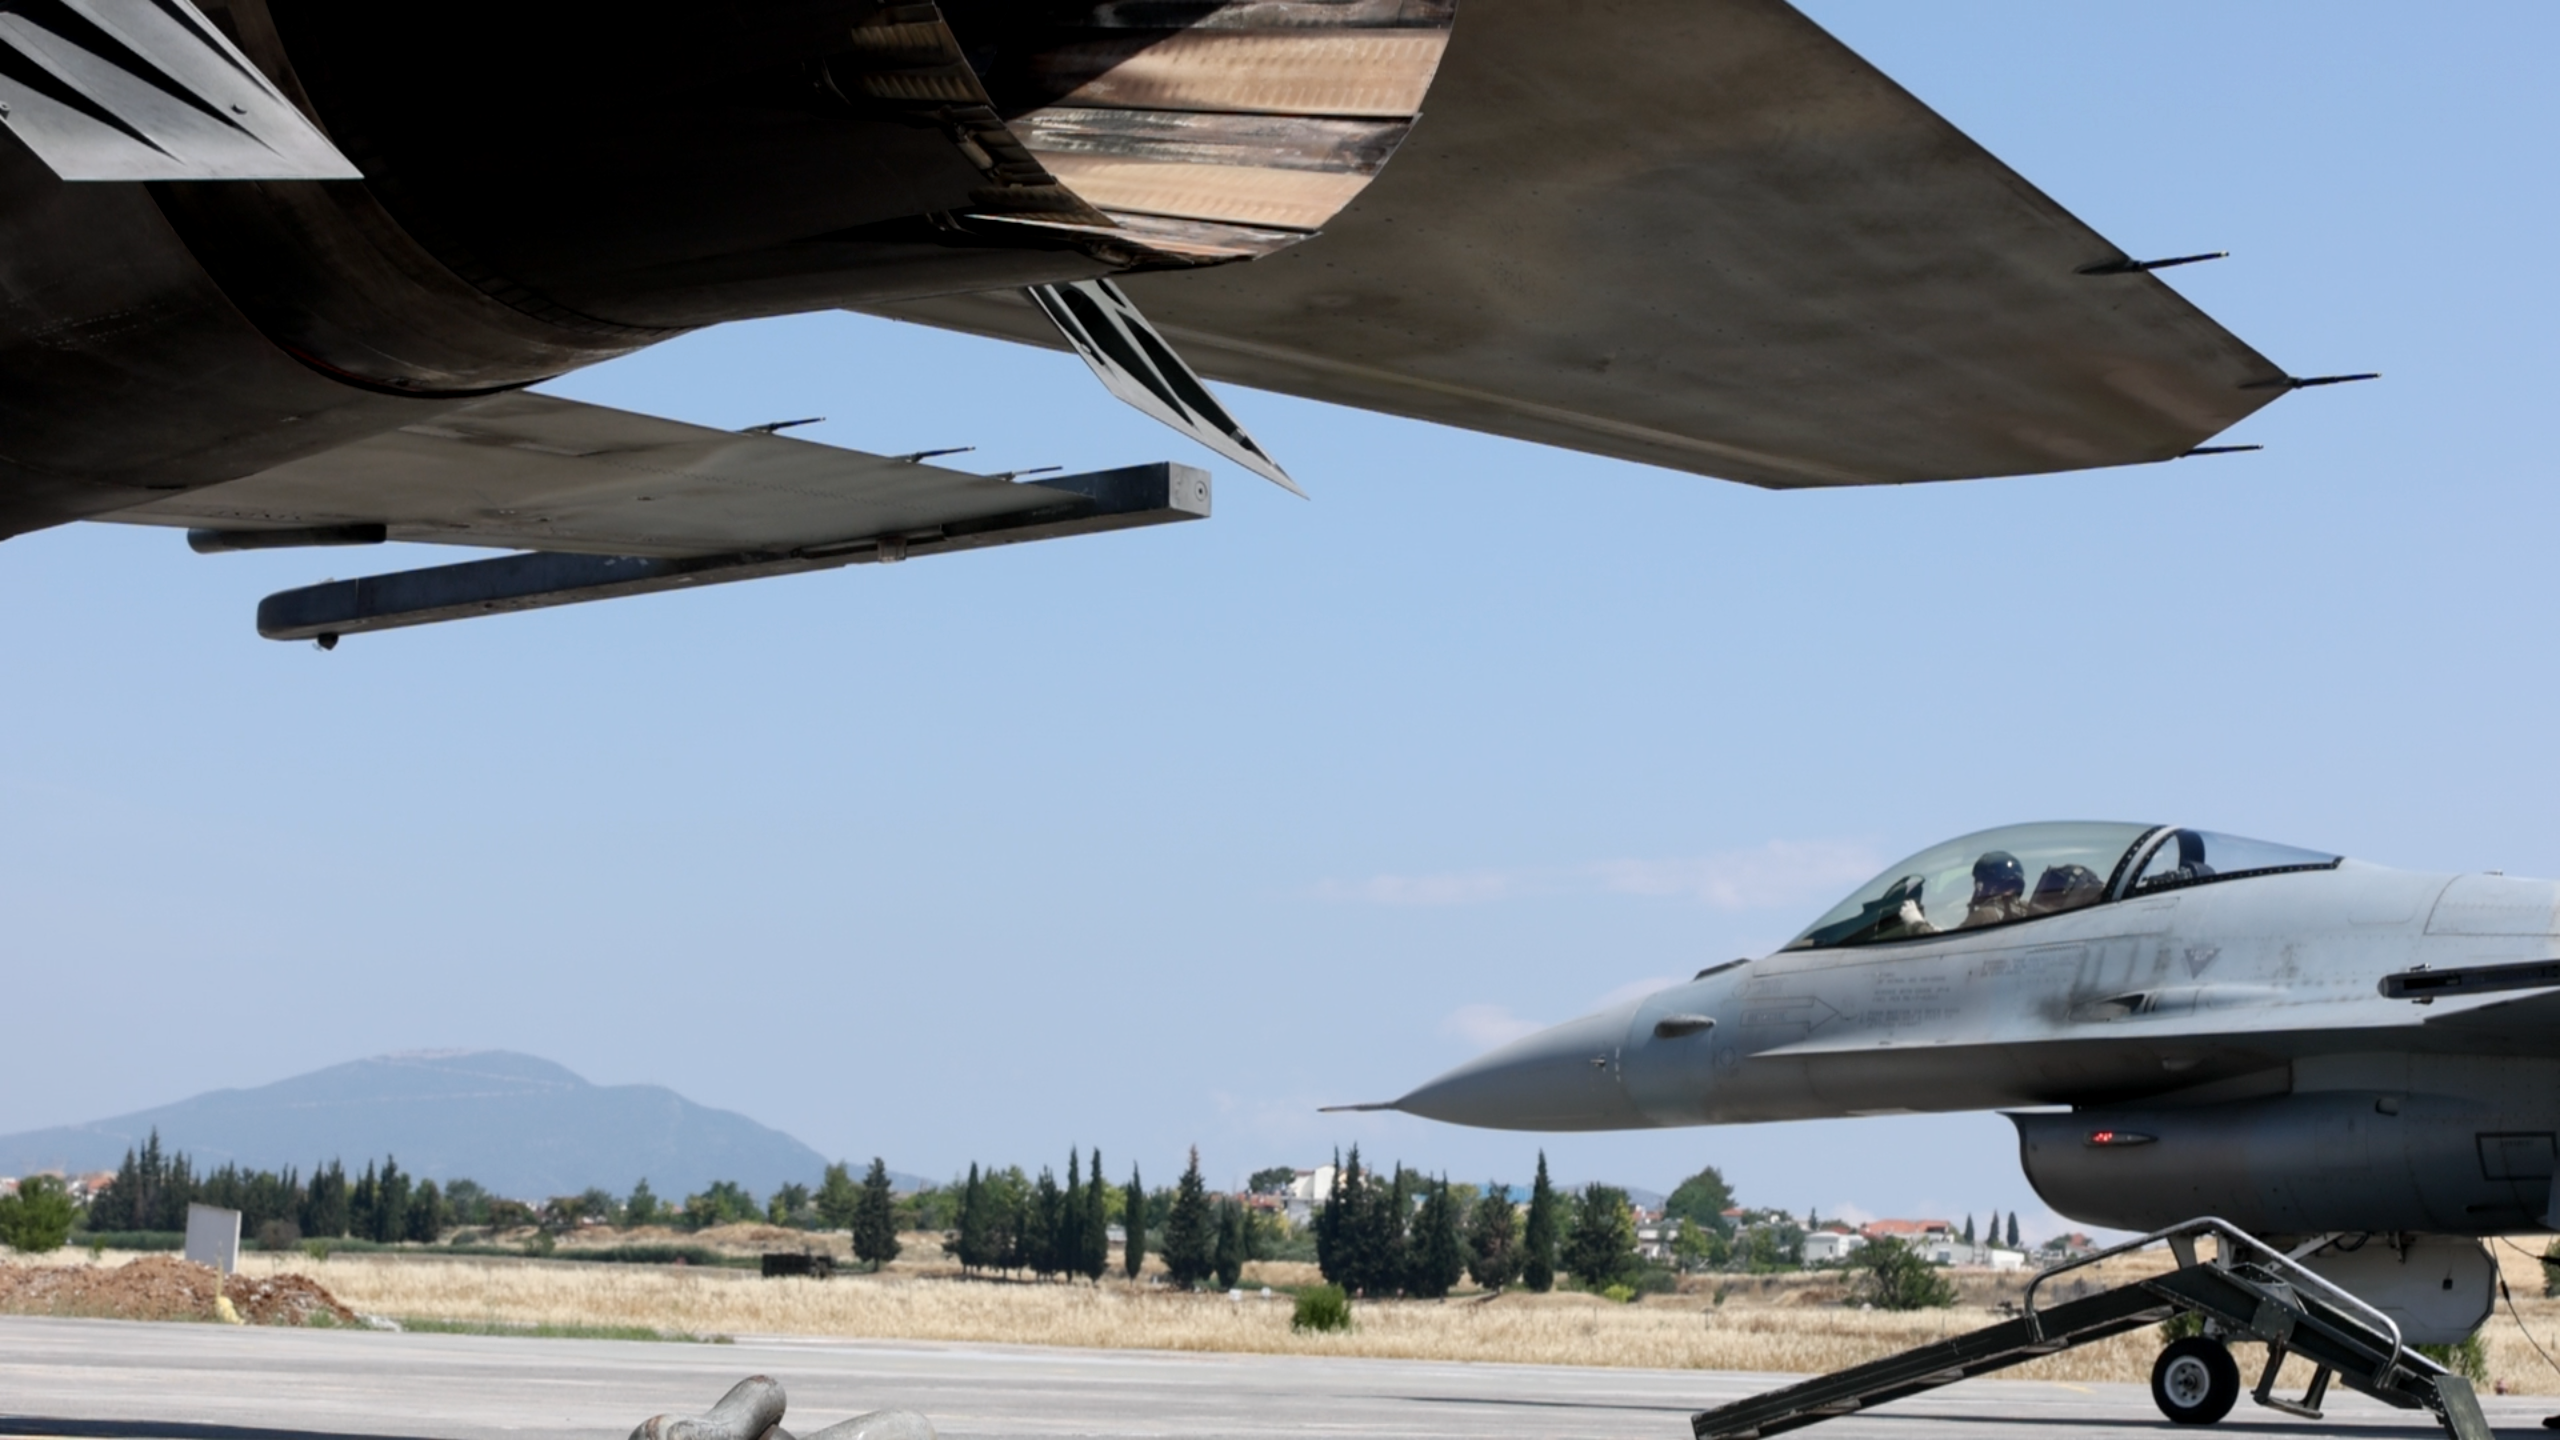 Η διοίκηση της ΕΑΒ ανακοινώνει τις πτήσεις των 2 πρώτων F-16 Viper  καταθέτοντας αγωγή ύψους 532.000 ευρώ κατά εργαζομένων!